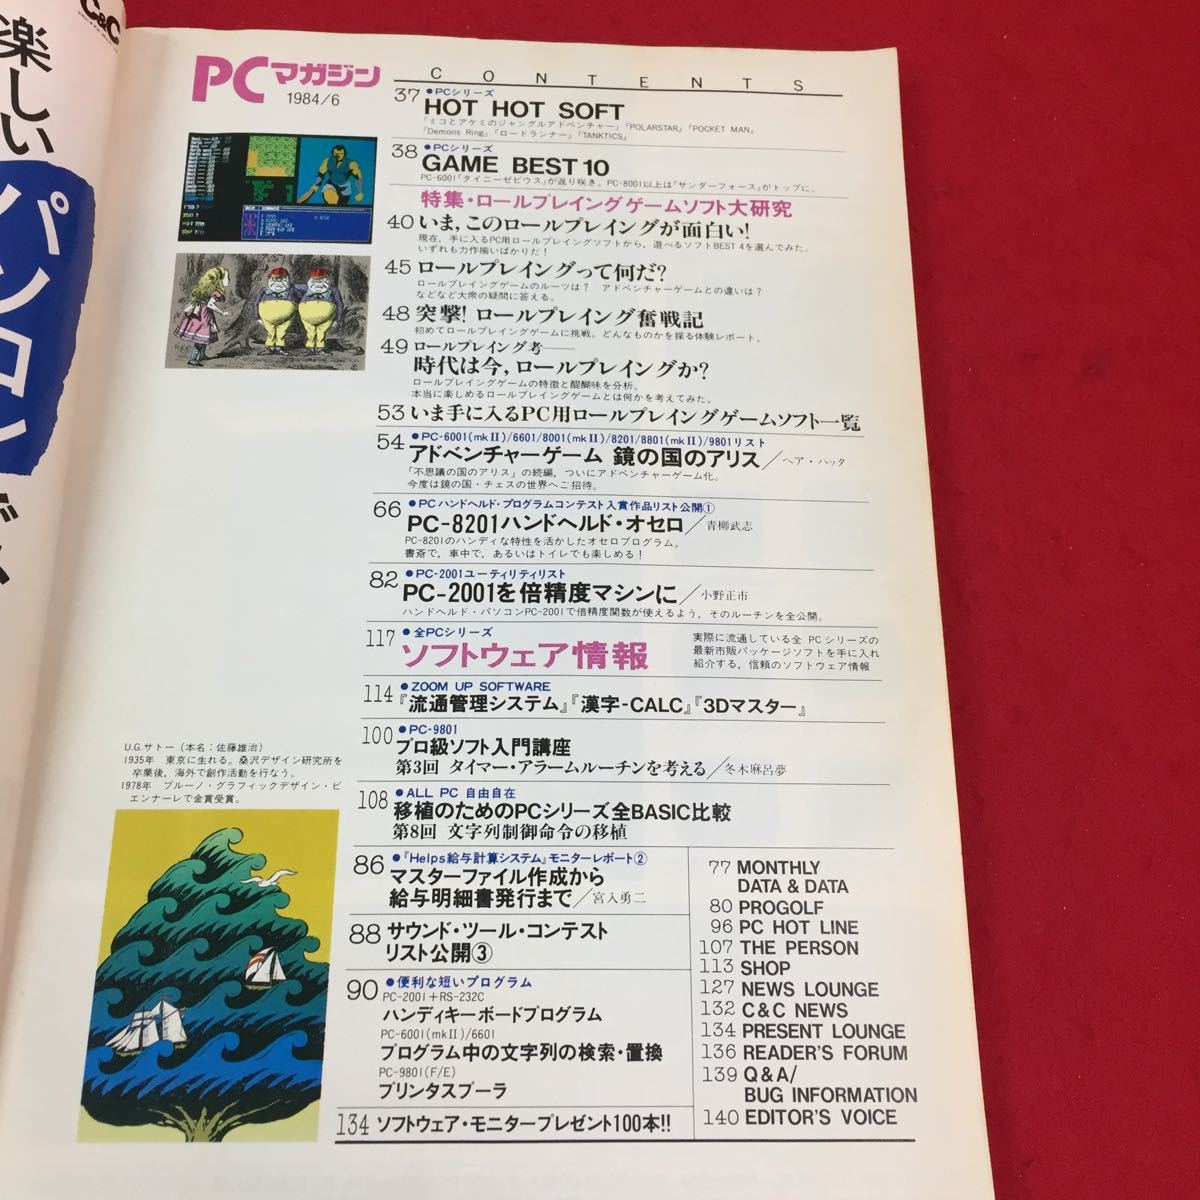 a-459 PC журнал forNECPCSeries6 месяц номер все PC серии программное обеспечение информация акционерное общество новый . изначальный фирма Showa 59 год выпуск *7